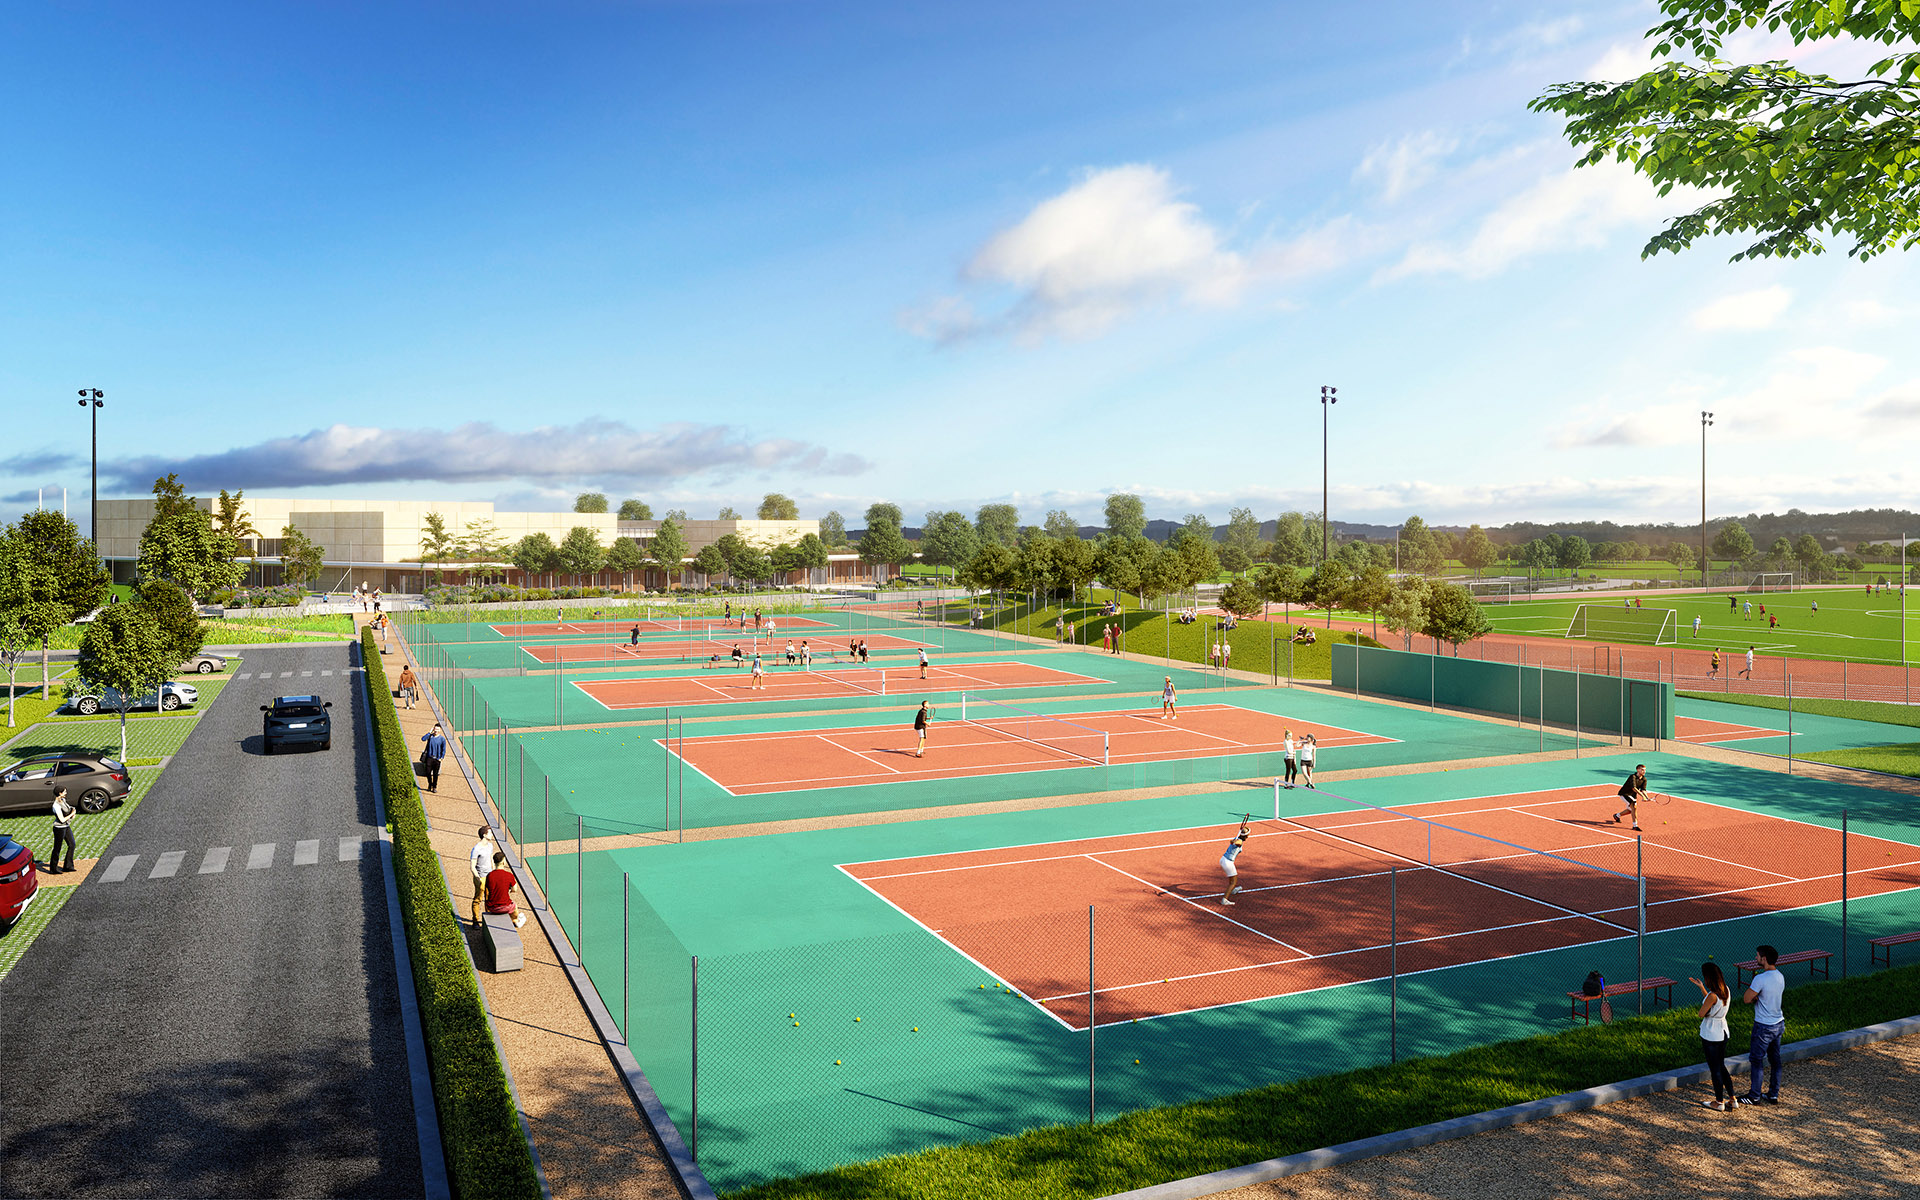 Rendu 3D de terrains de tennis en extérieur, intégrés dans l'environnement